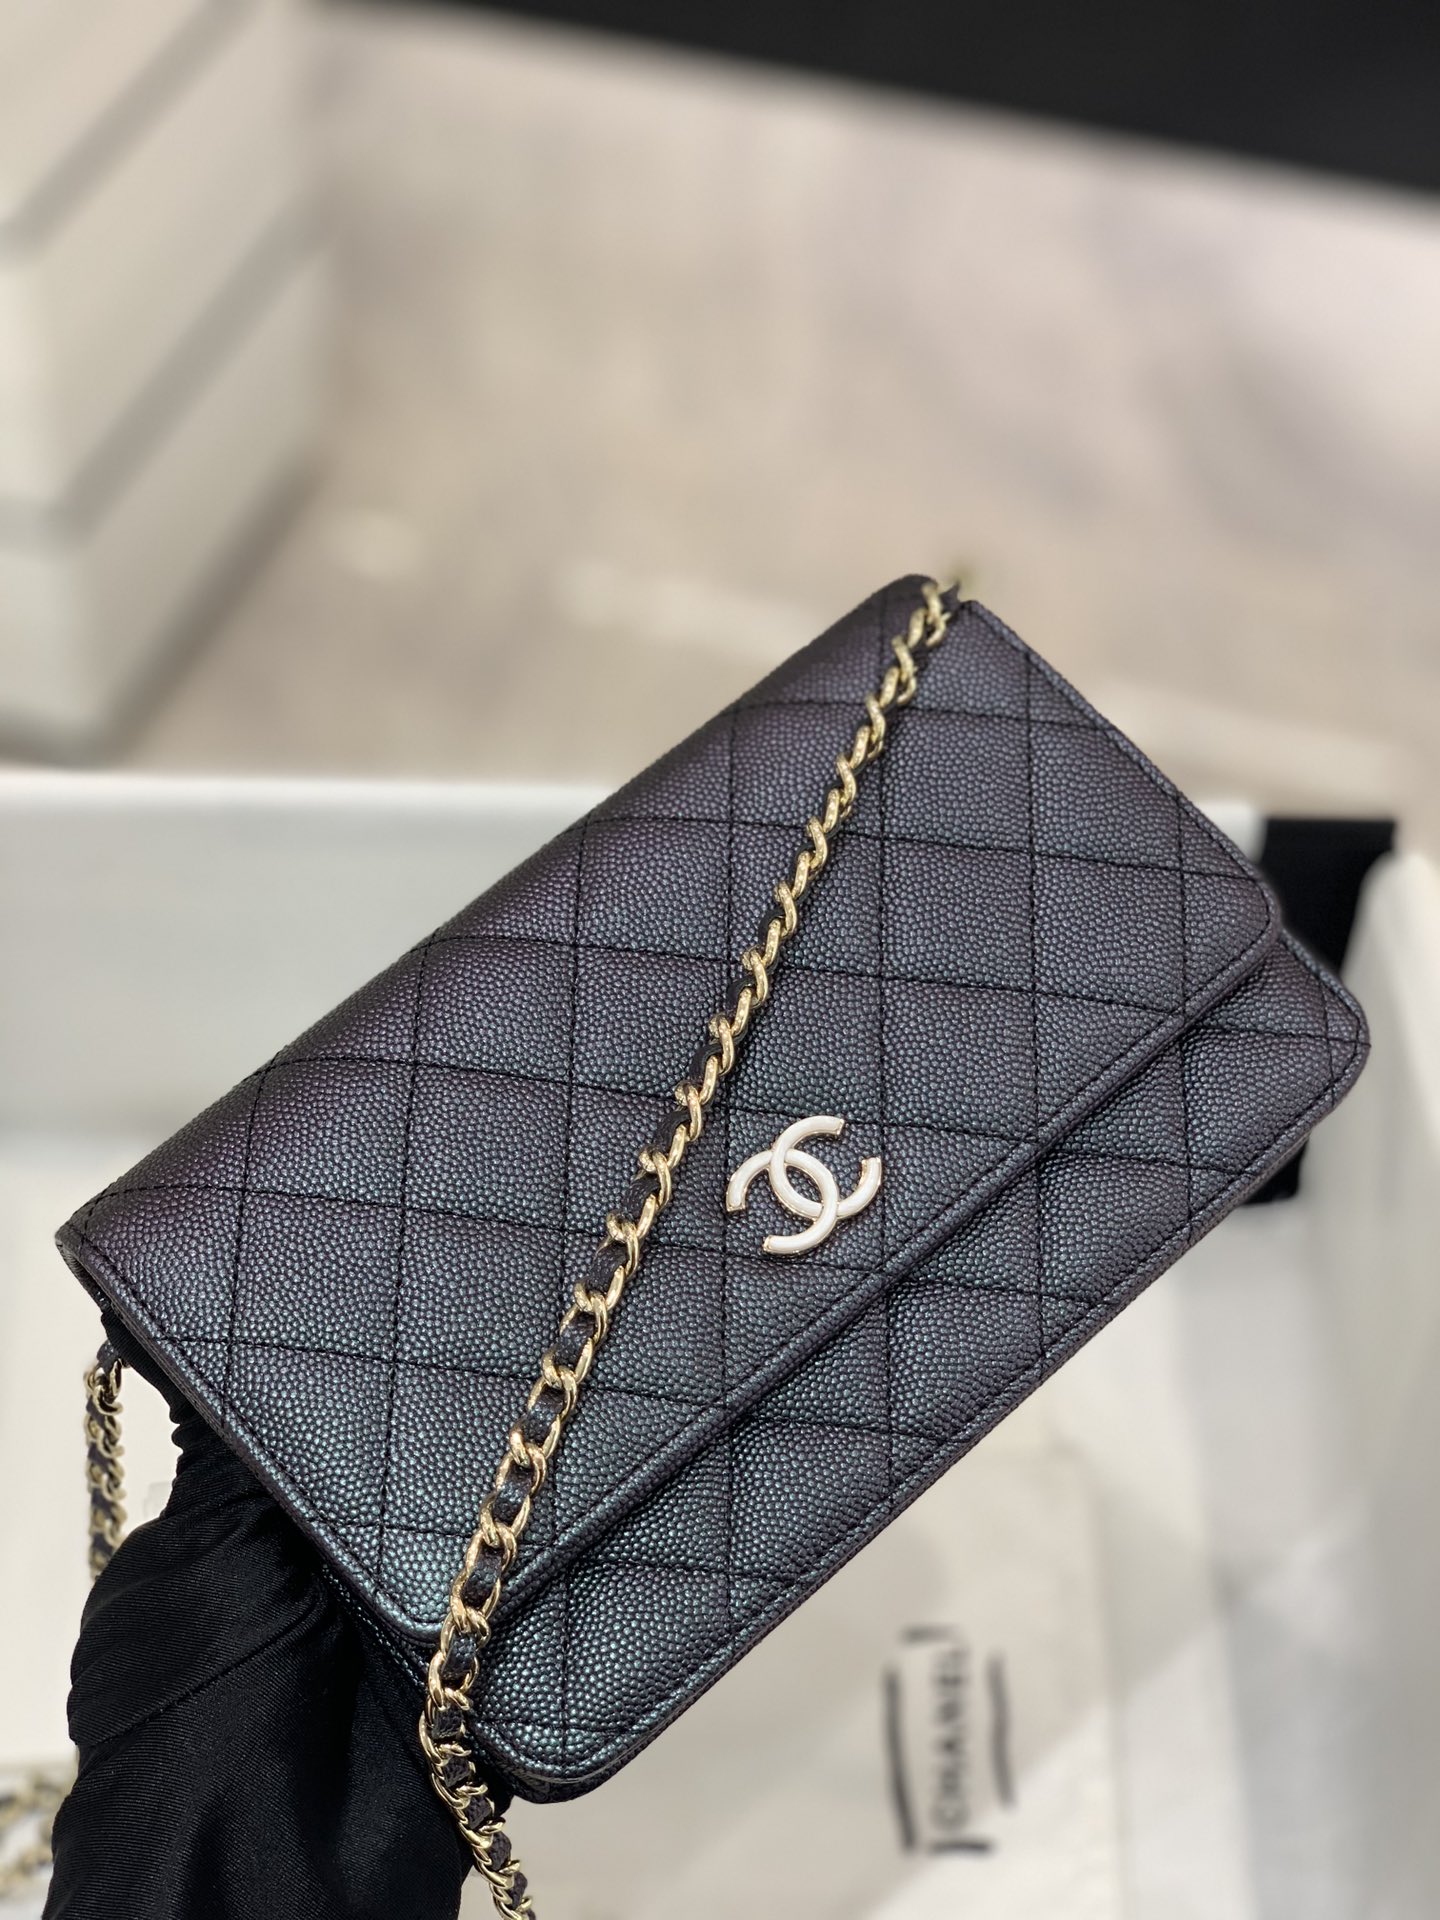 【按扣版】 Chanel Woc 新款变色woc 珠光皮 顶级皮料五金 19.5-13-3.5cm